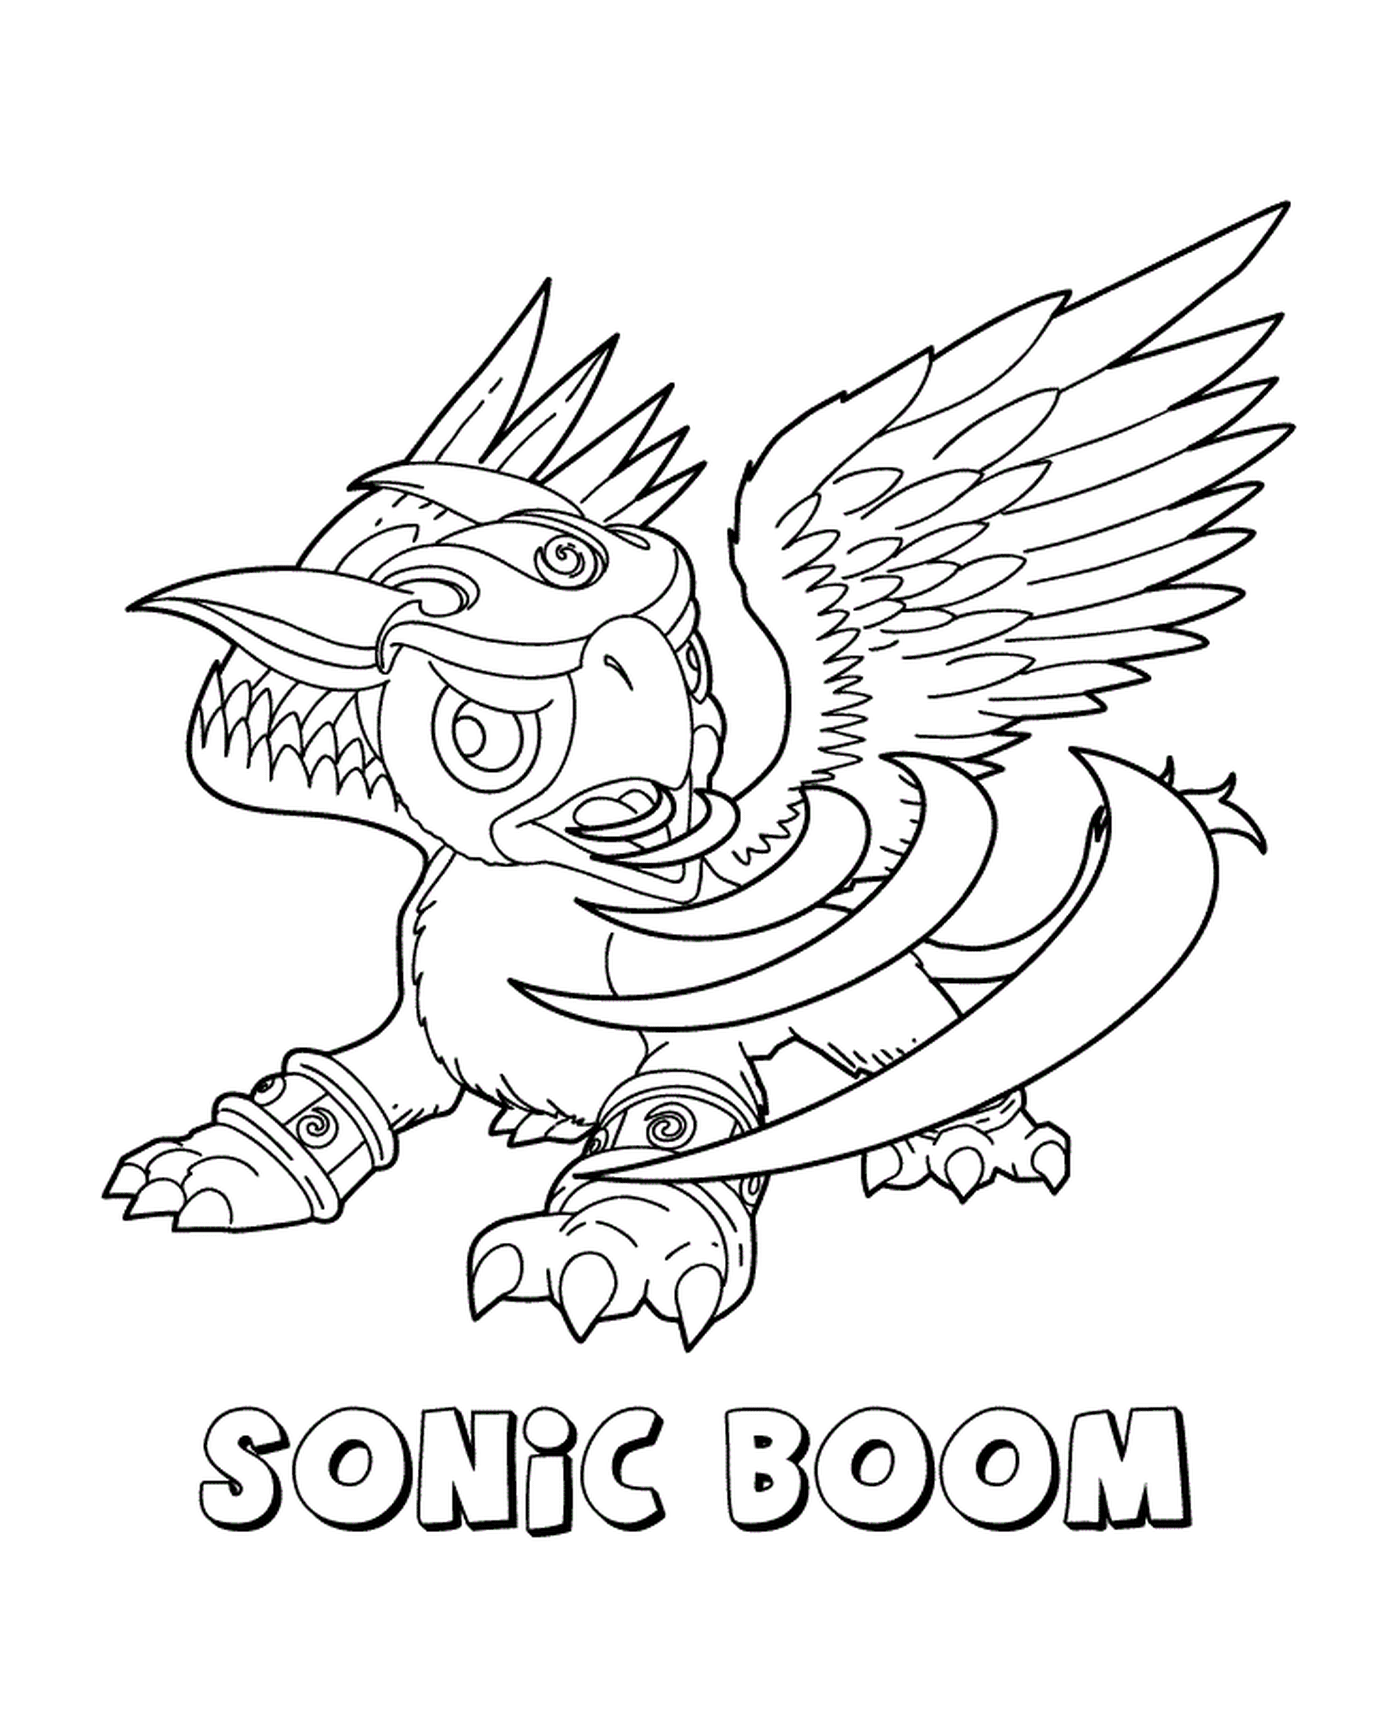  " Skylanders Gigants Air Sonic Boom Adventure " ( < < Приключение для скайлендеров > > ) 